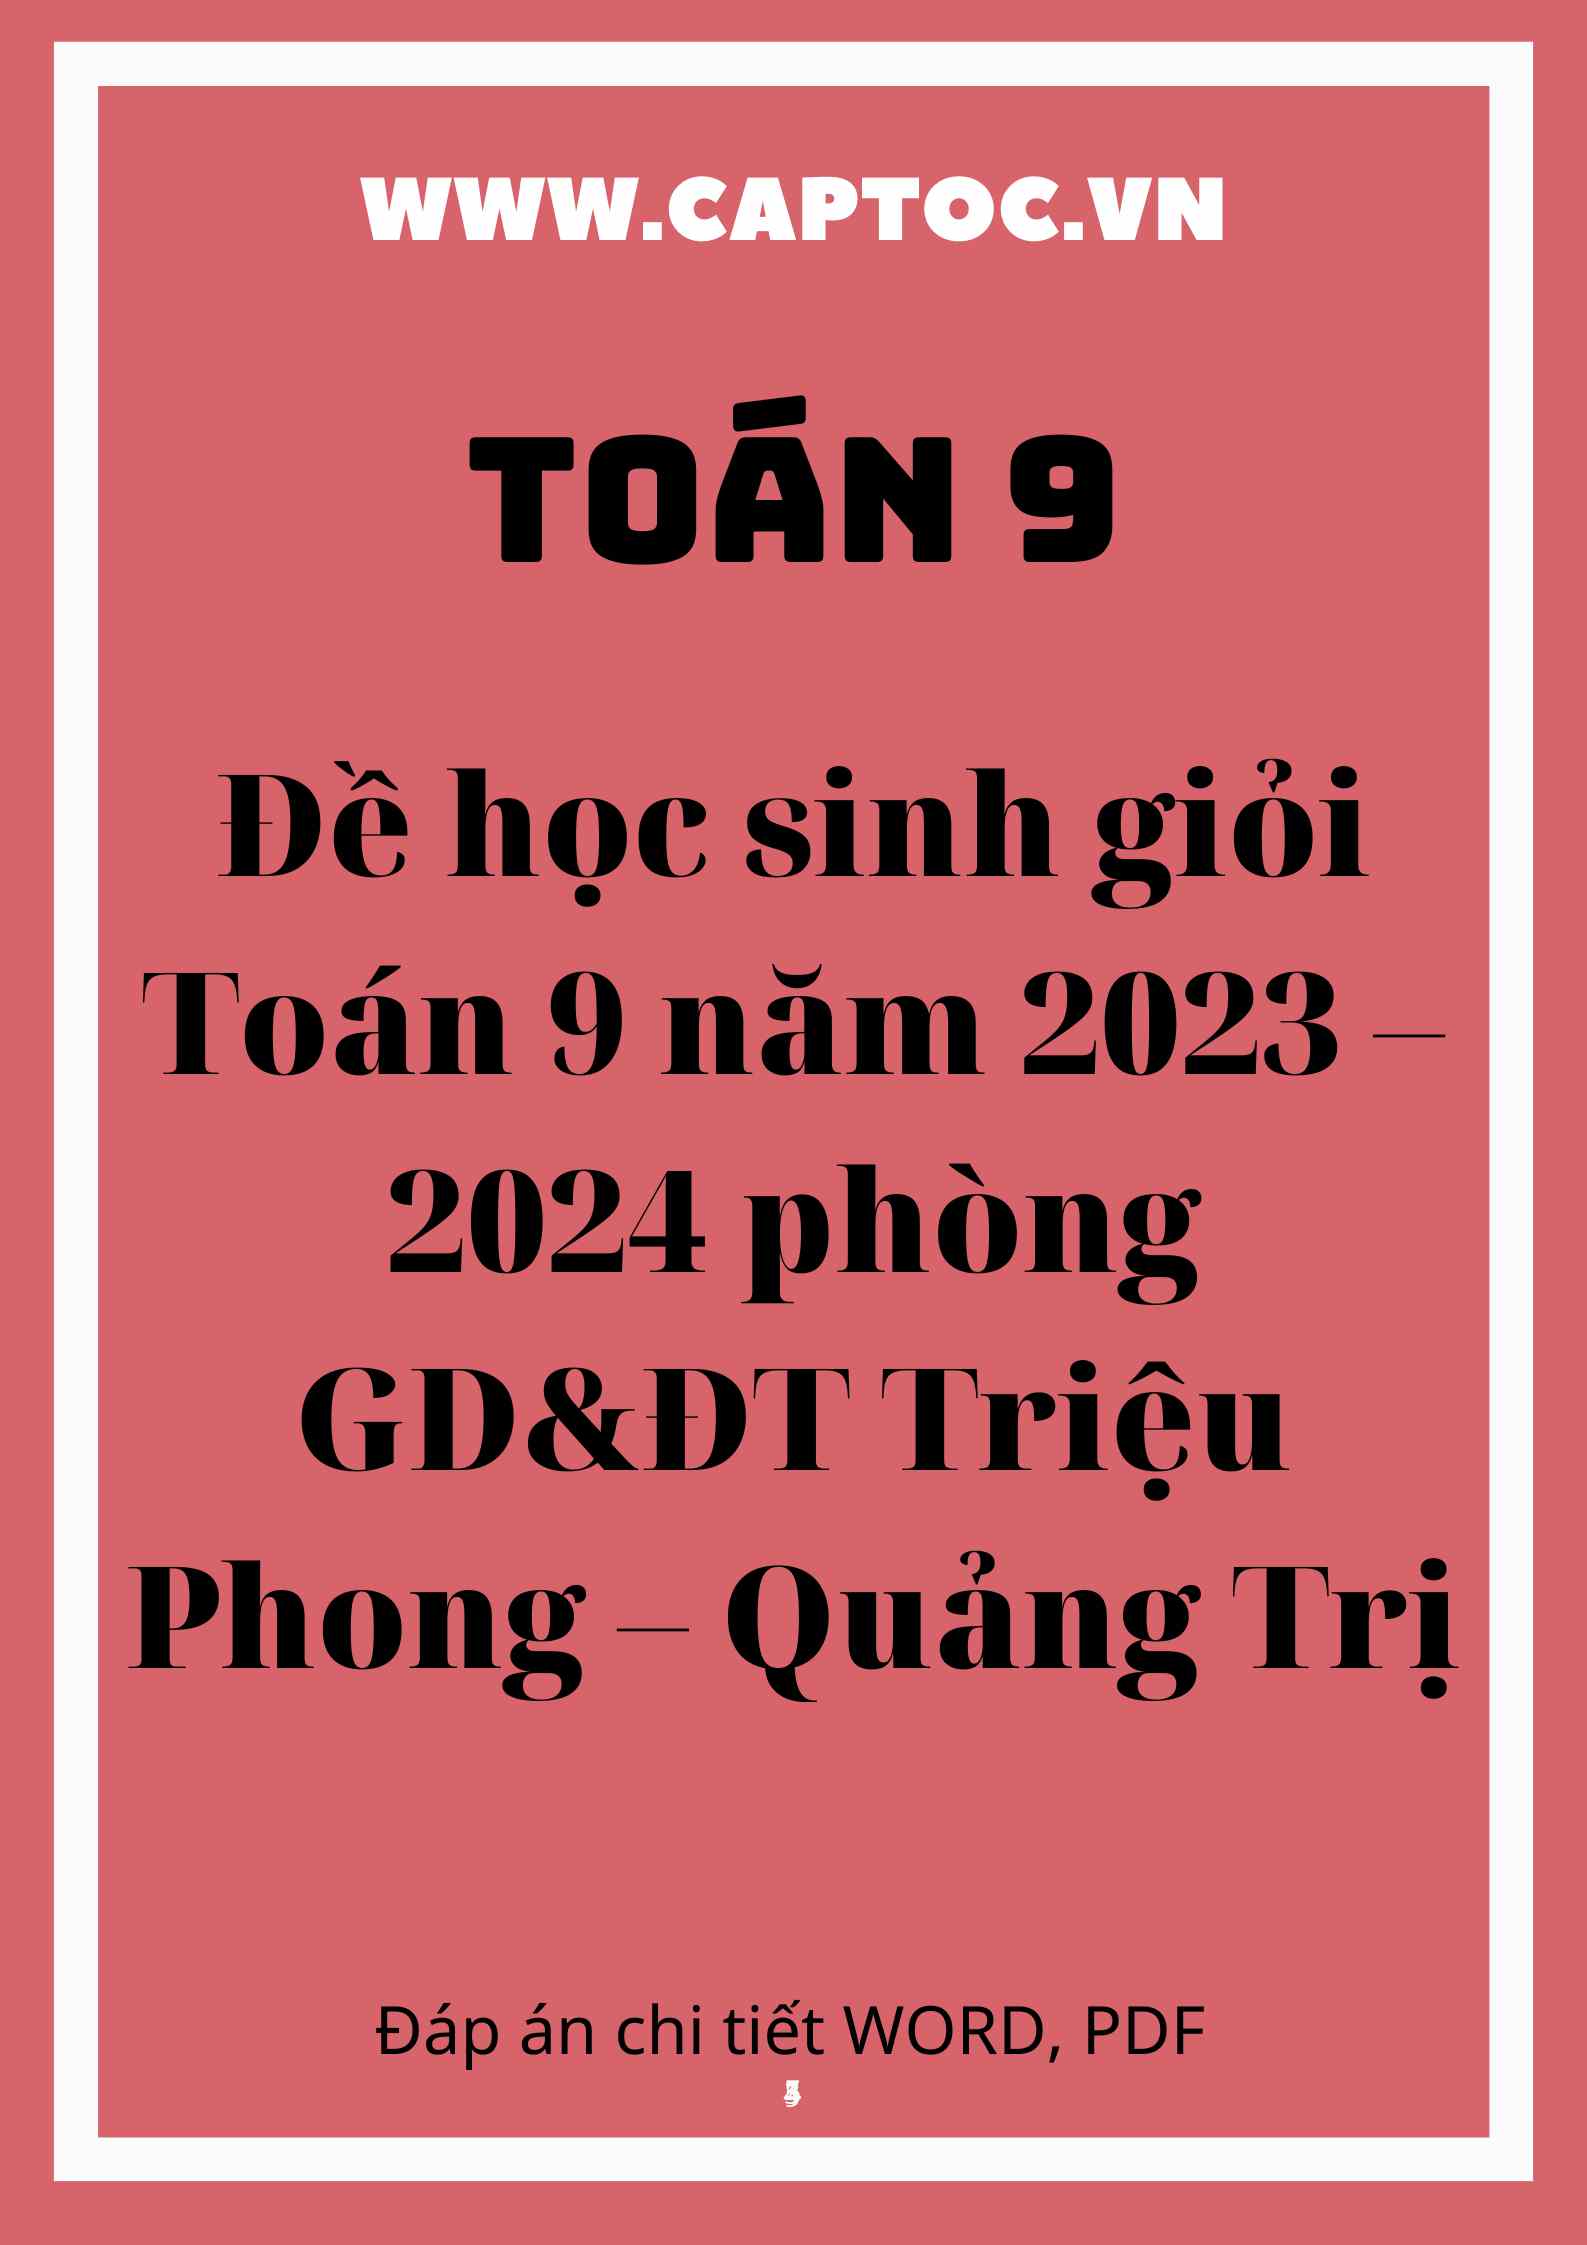 Đề học sinh giỏi Toán 9 năm 2023 – 2024 phòng GD&ĐT Triệu Phong – Quảng Trị